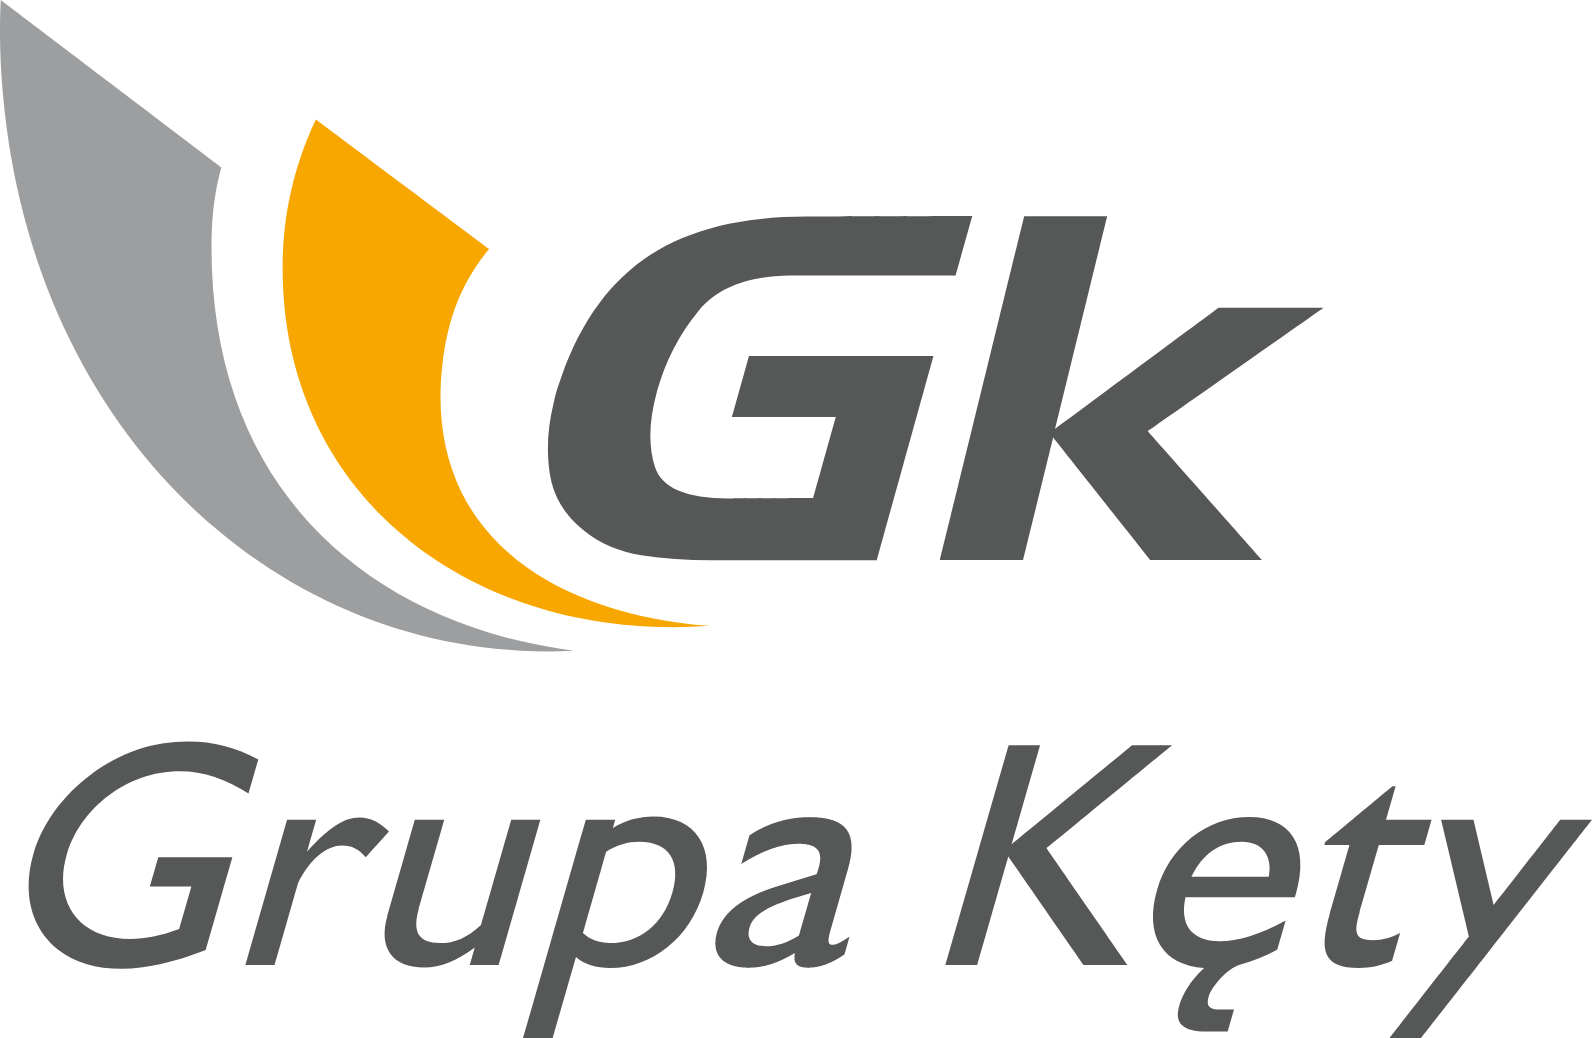 Grupa Kety logo large (transparent PNG)